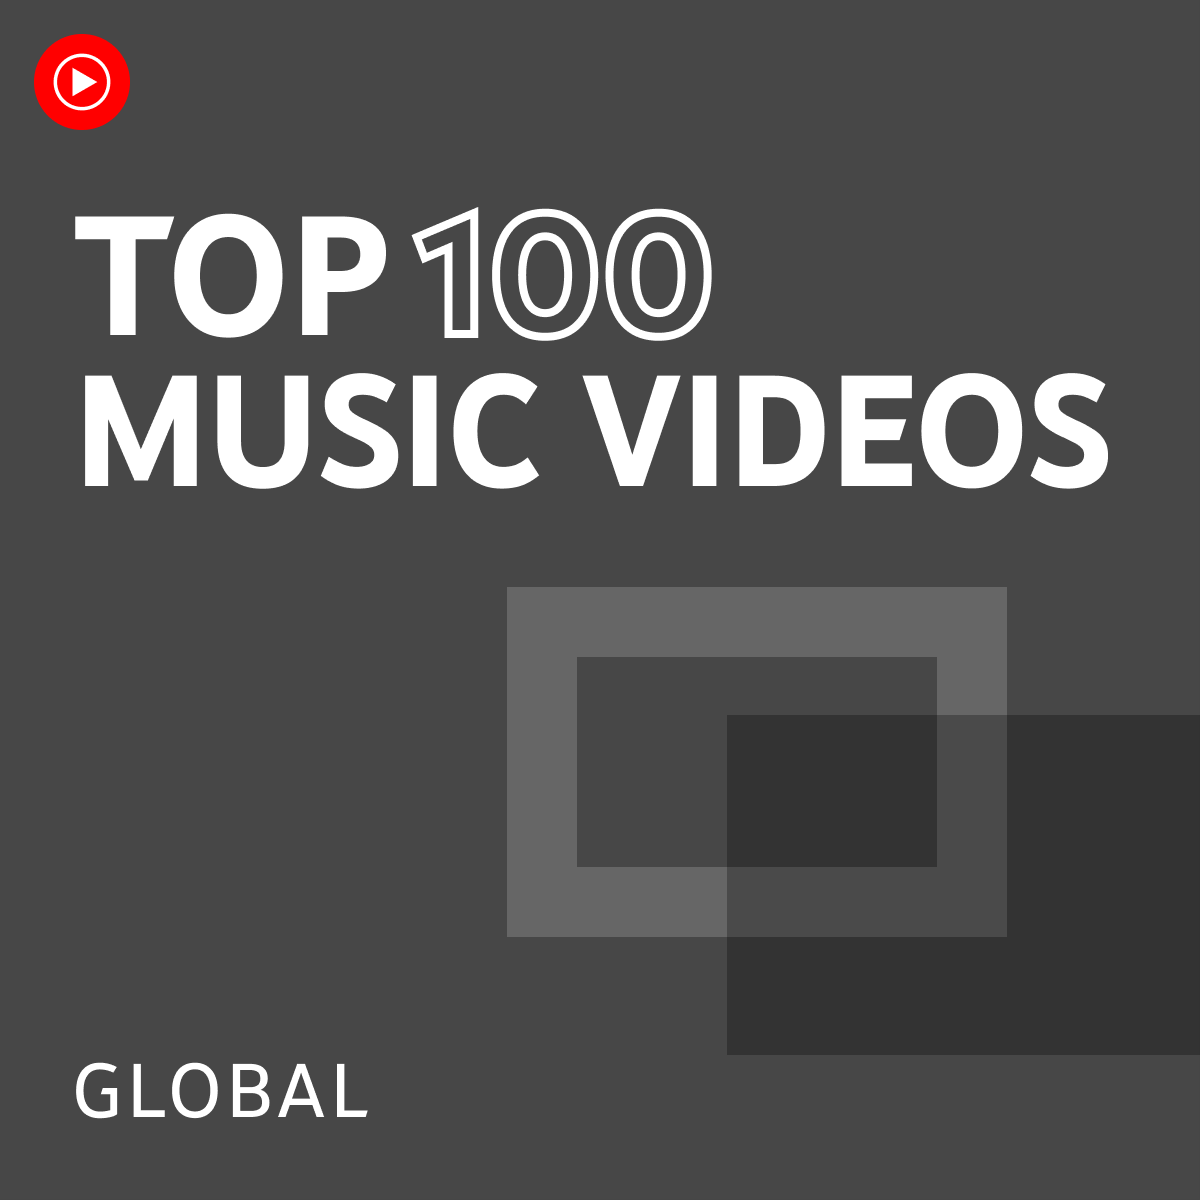 Top 100 Music Videos Global